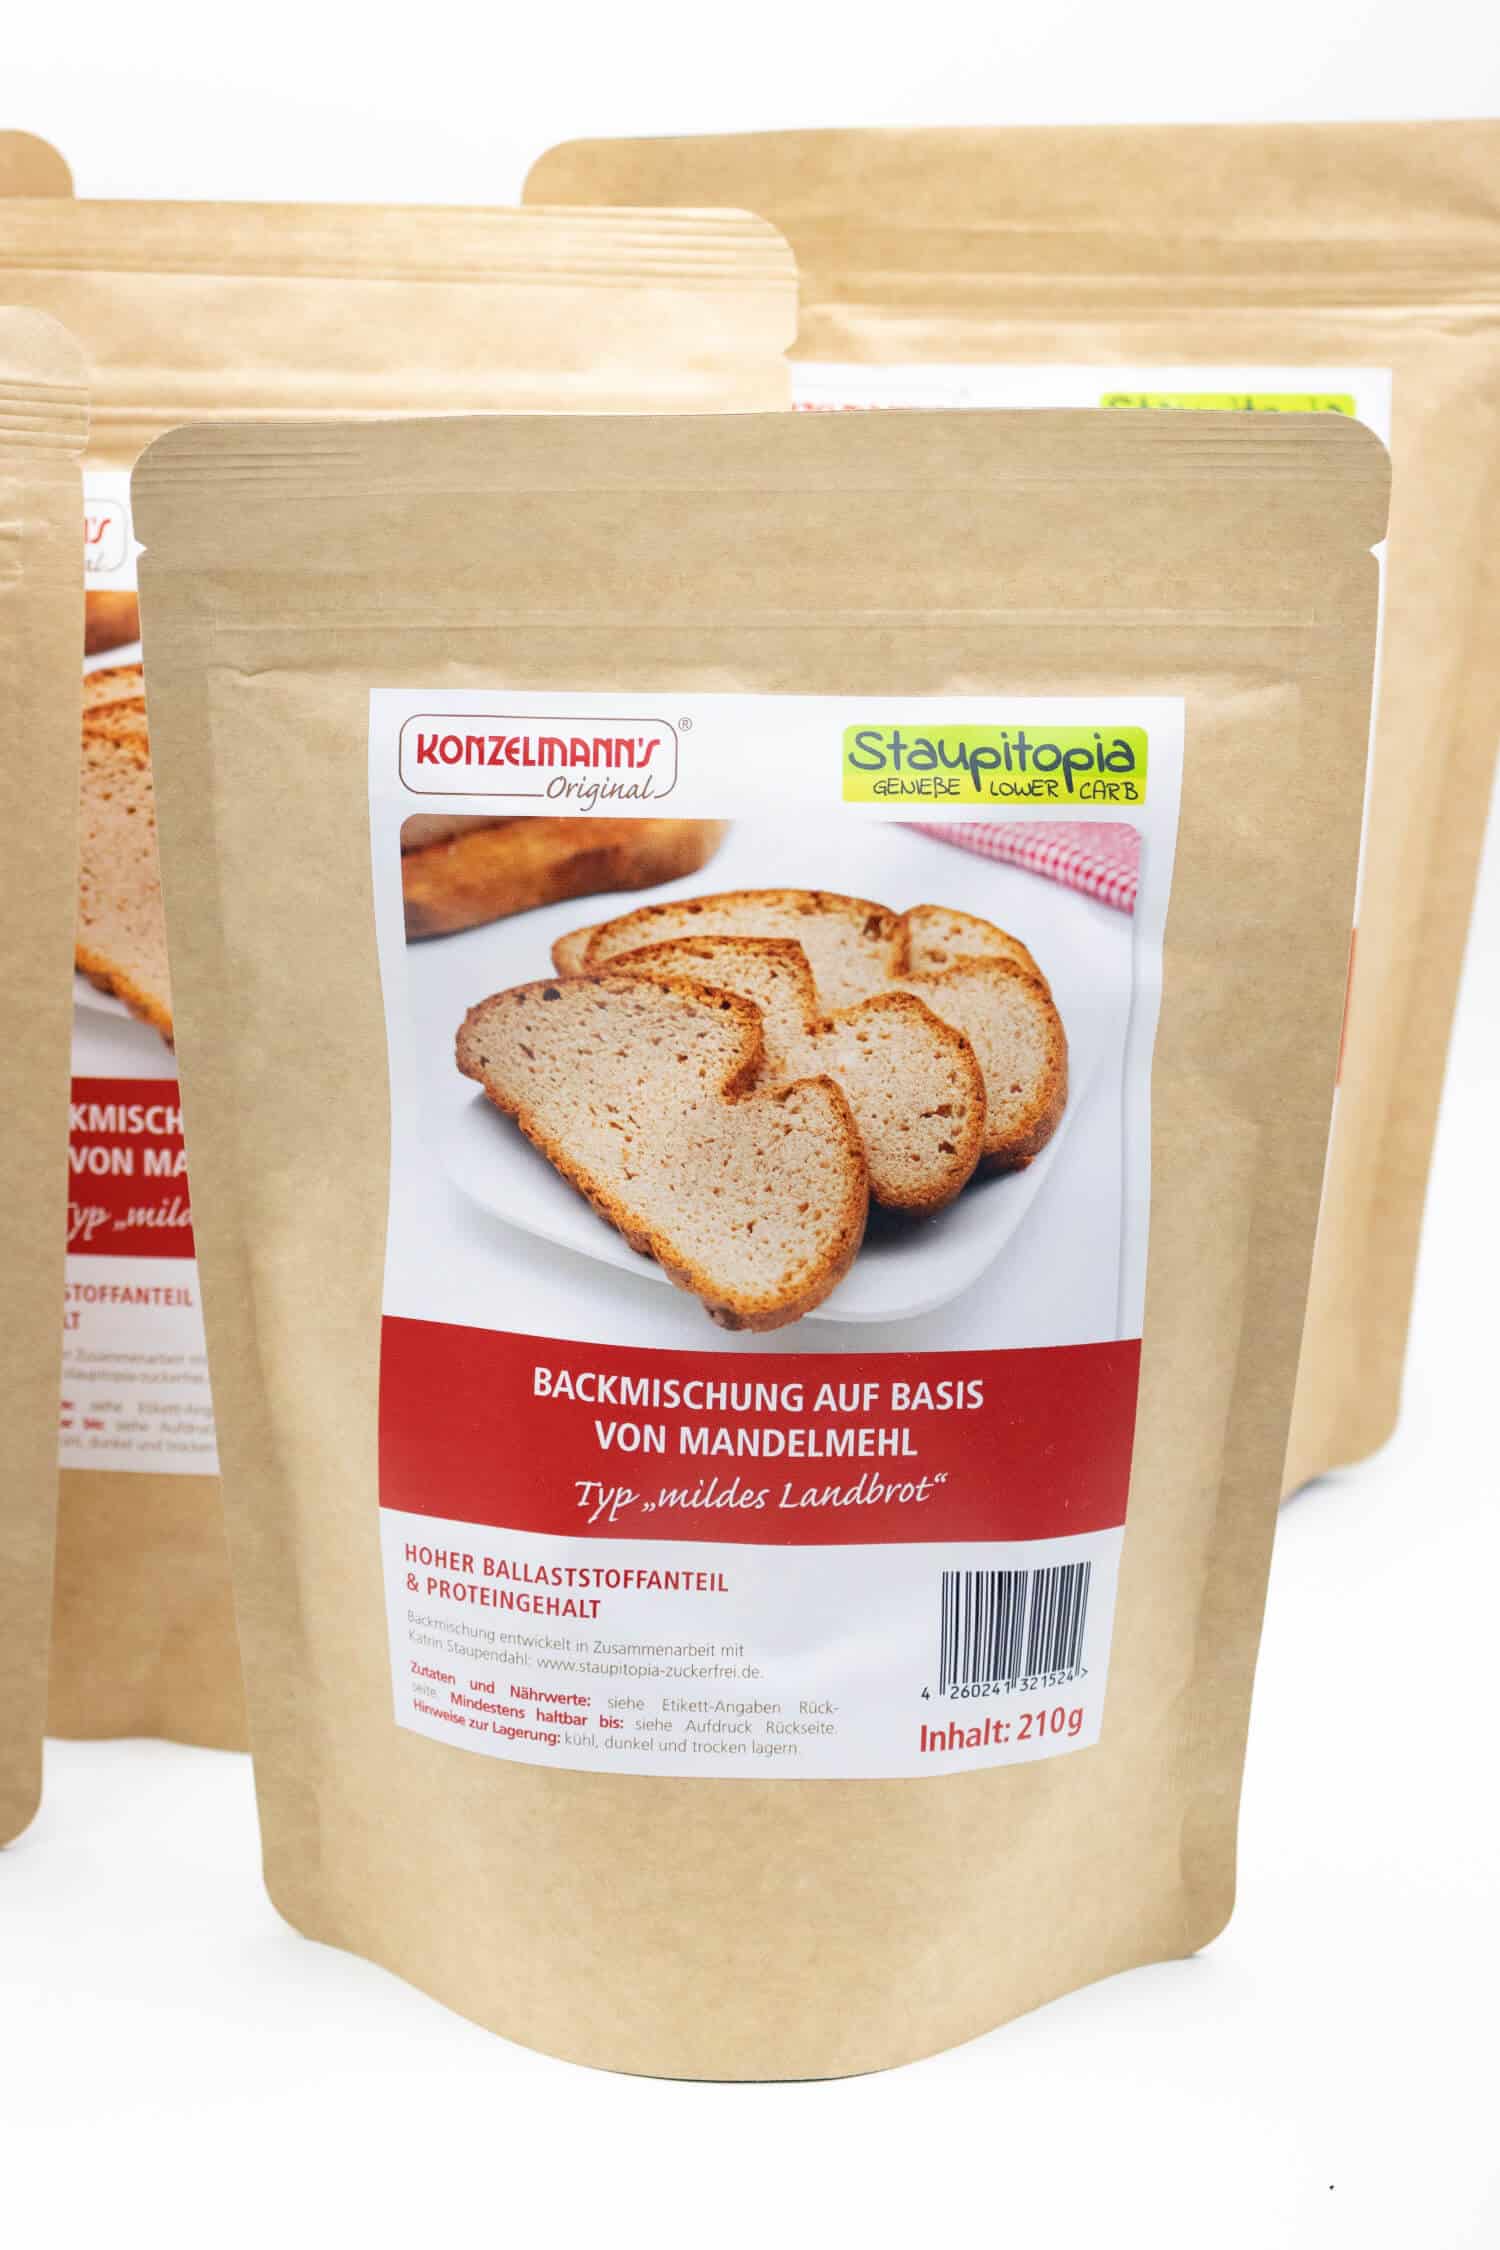 Backmischung Brot Low Carb Staupitopia Rezept